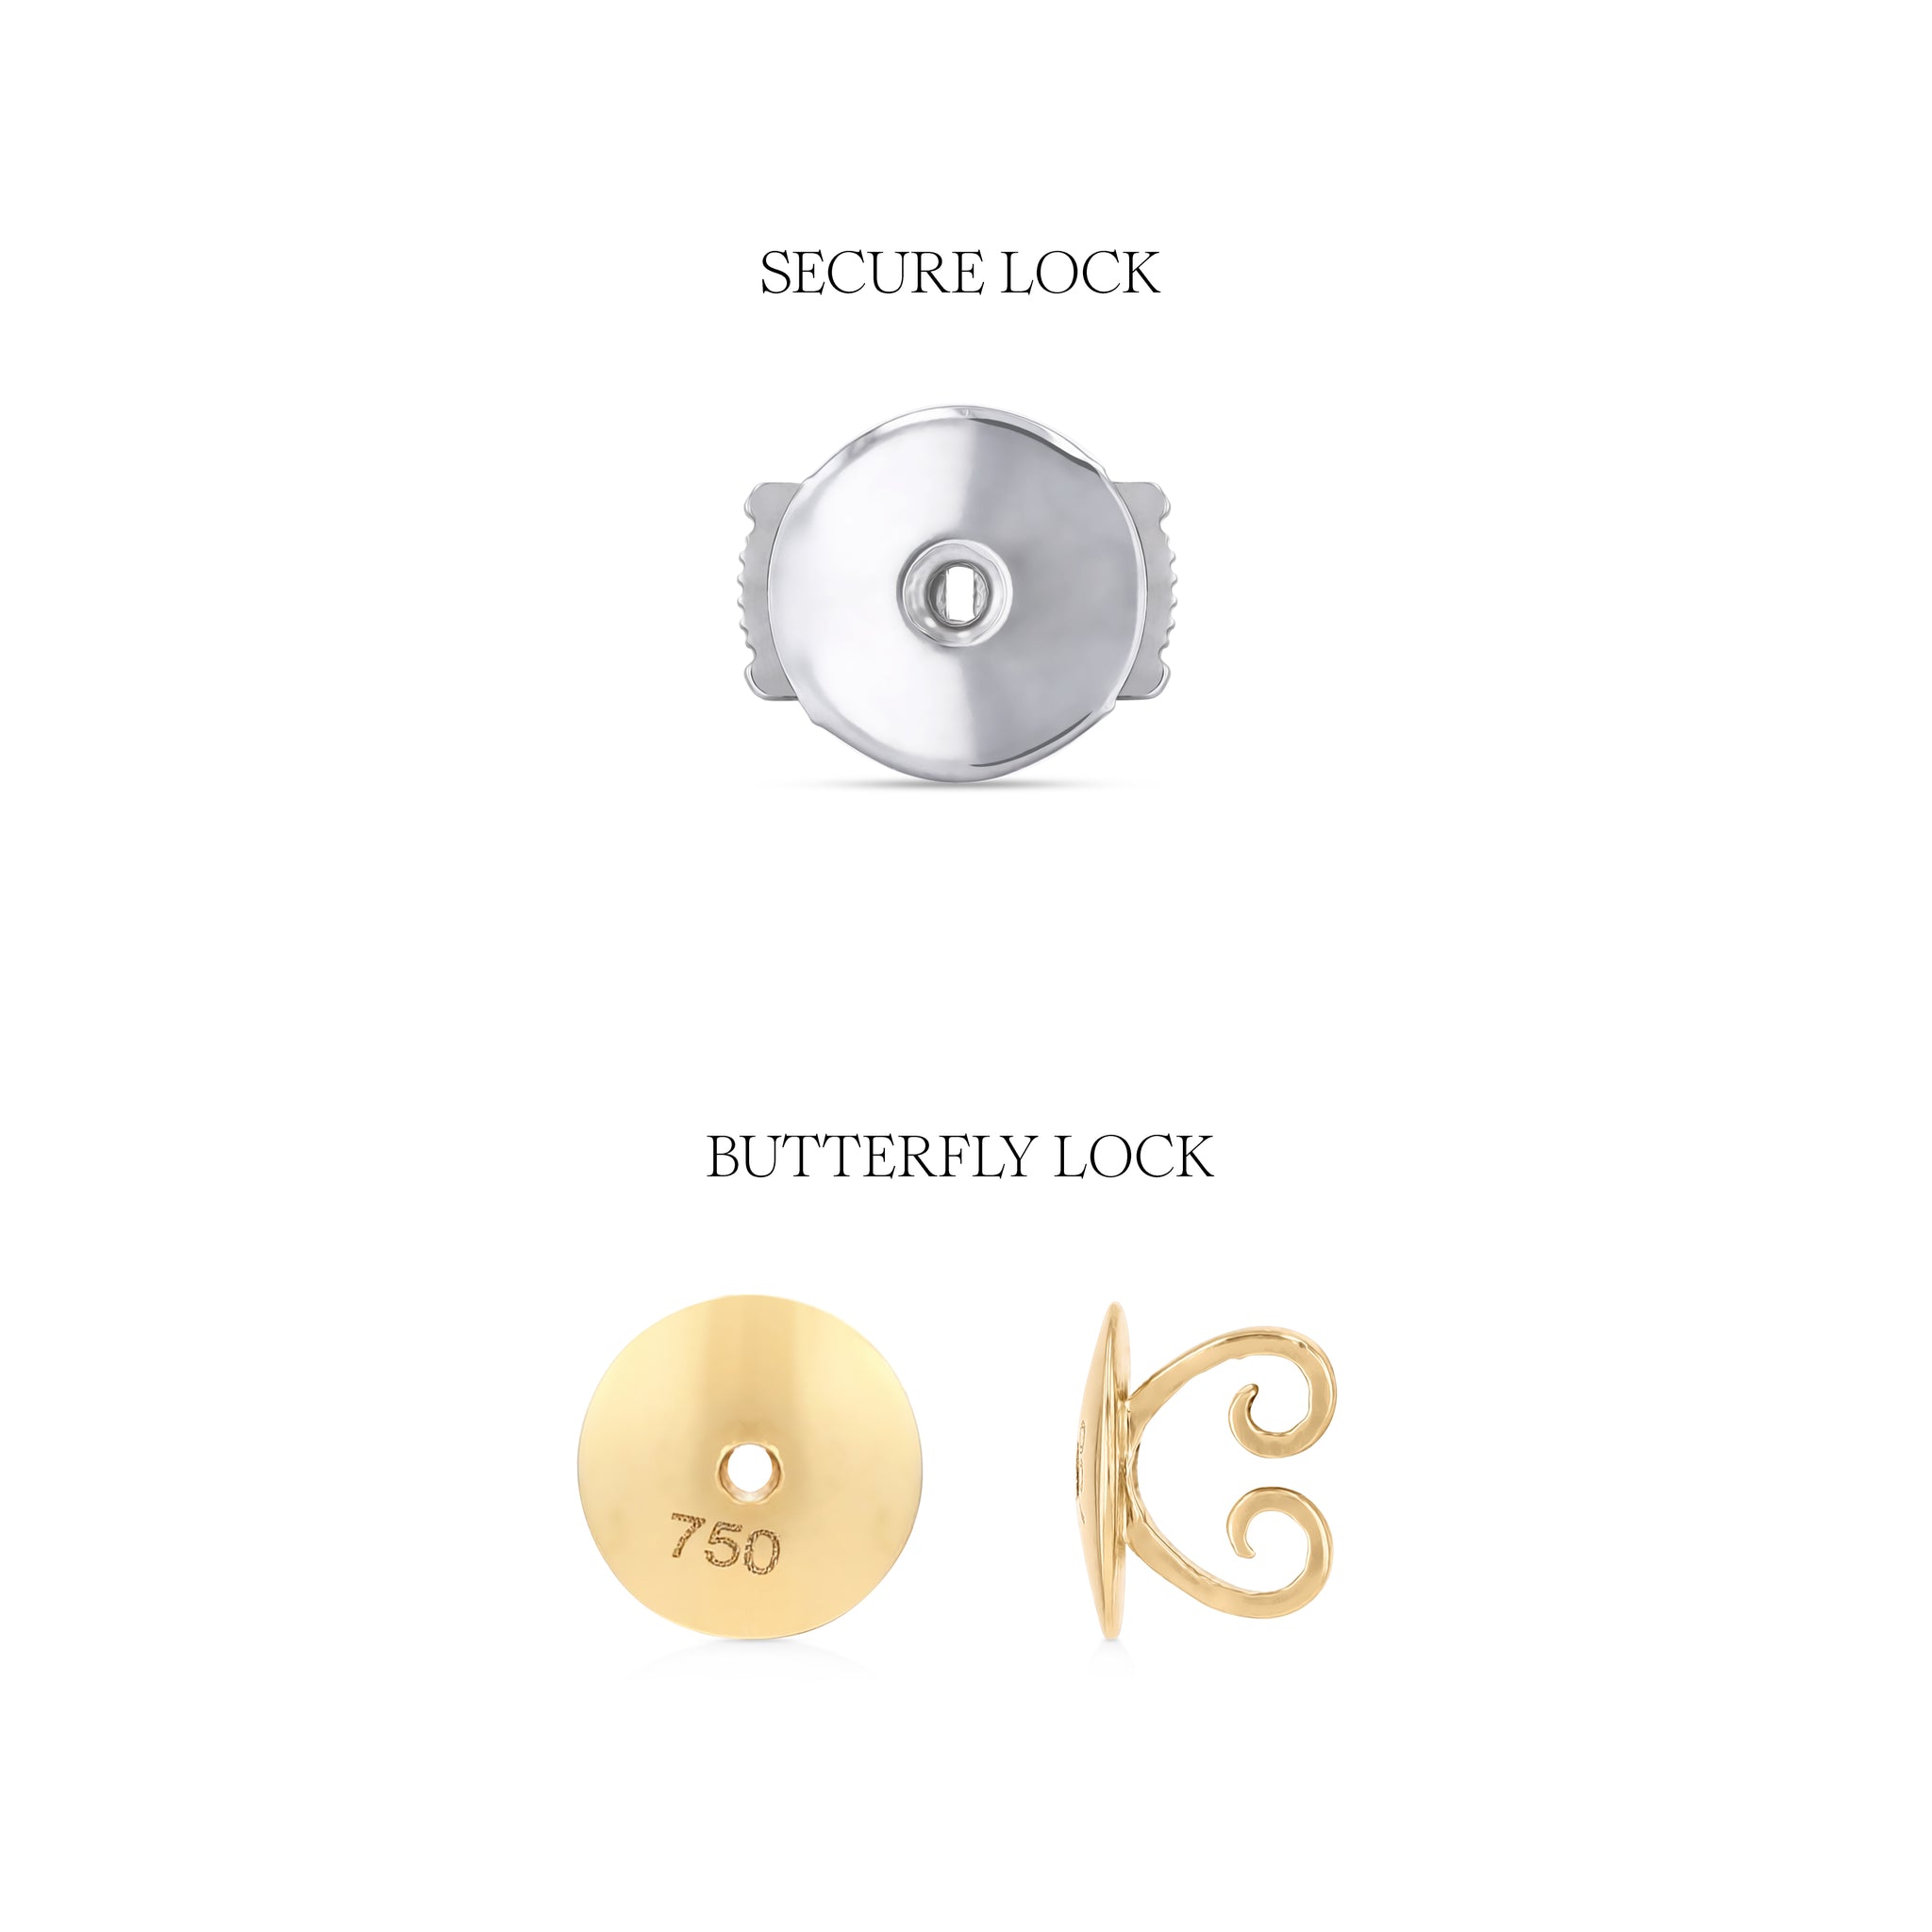 Butterfly vs Secure Lock